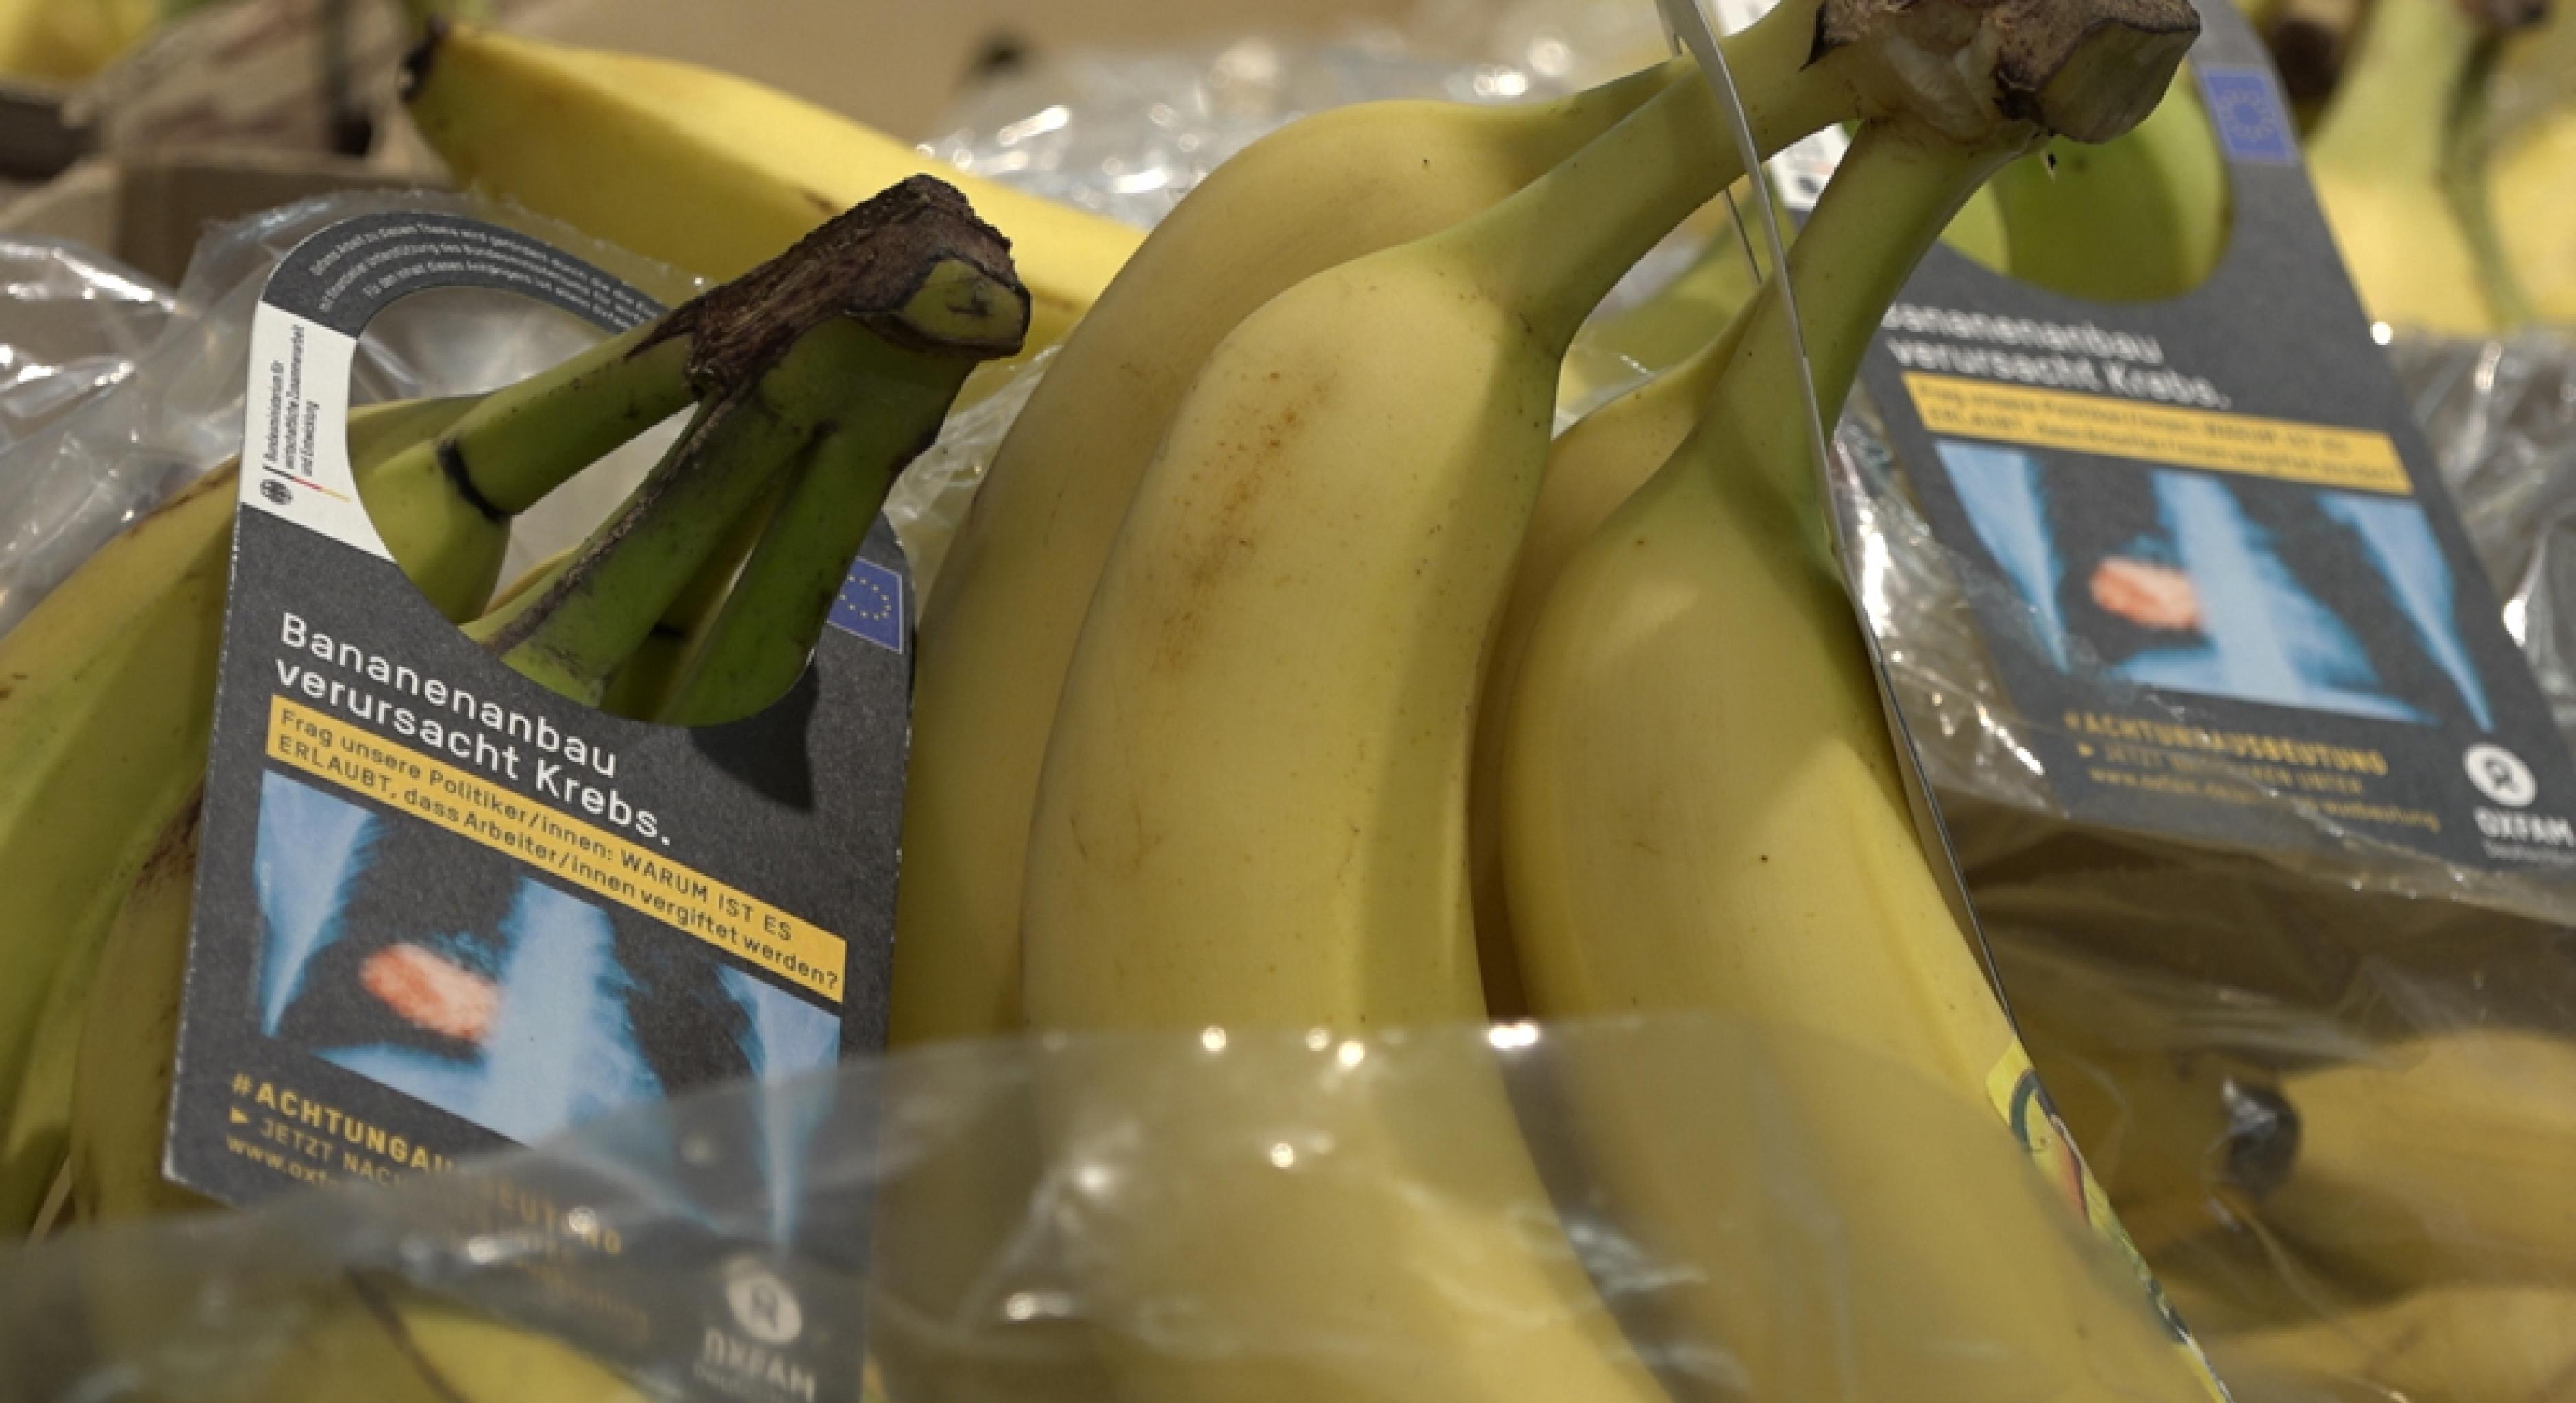 Bananen mit Schockbild-Anhängern im Stil der Warnhinweise auf Zigarettenpackungen: „Bananenanbau verursacht Krebs.“